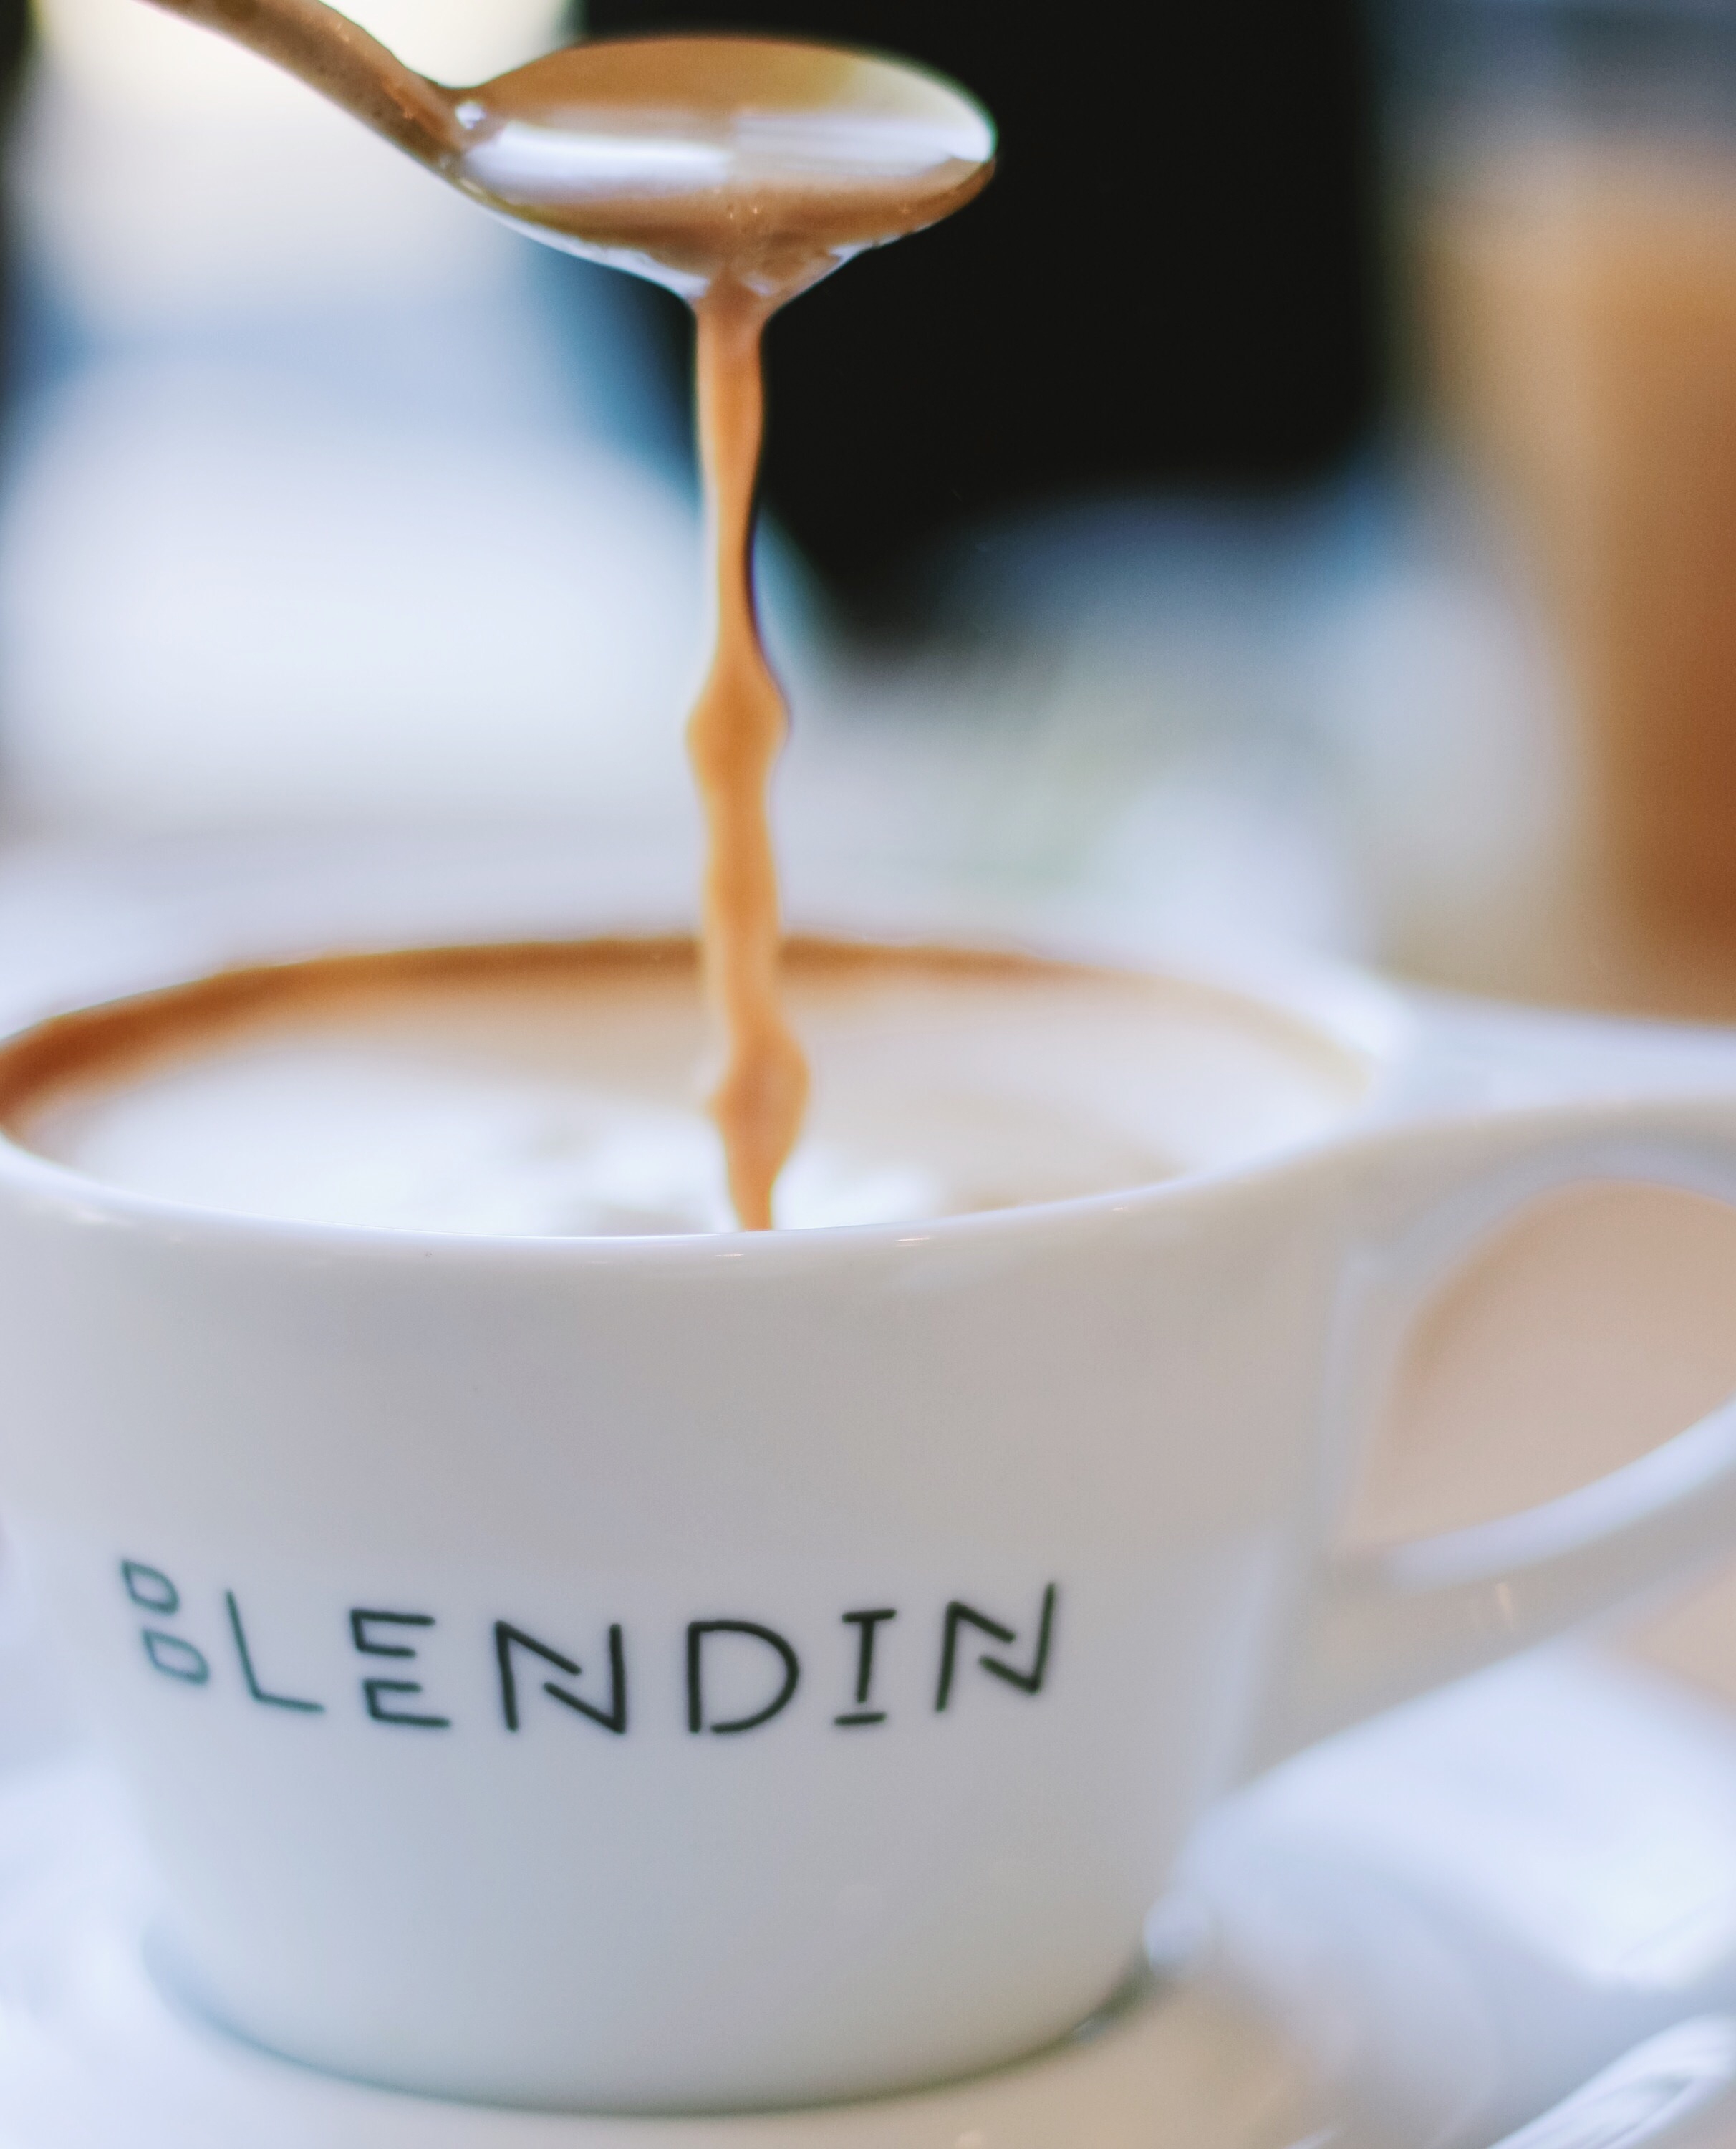 Blendin Coffee Club